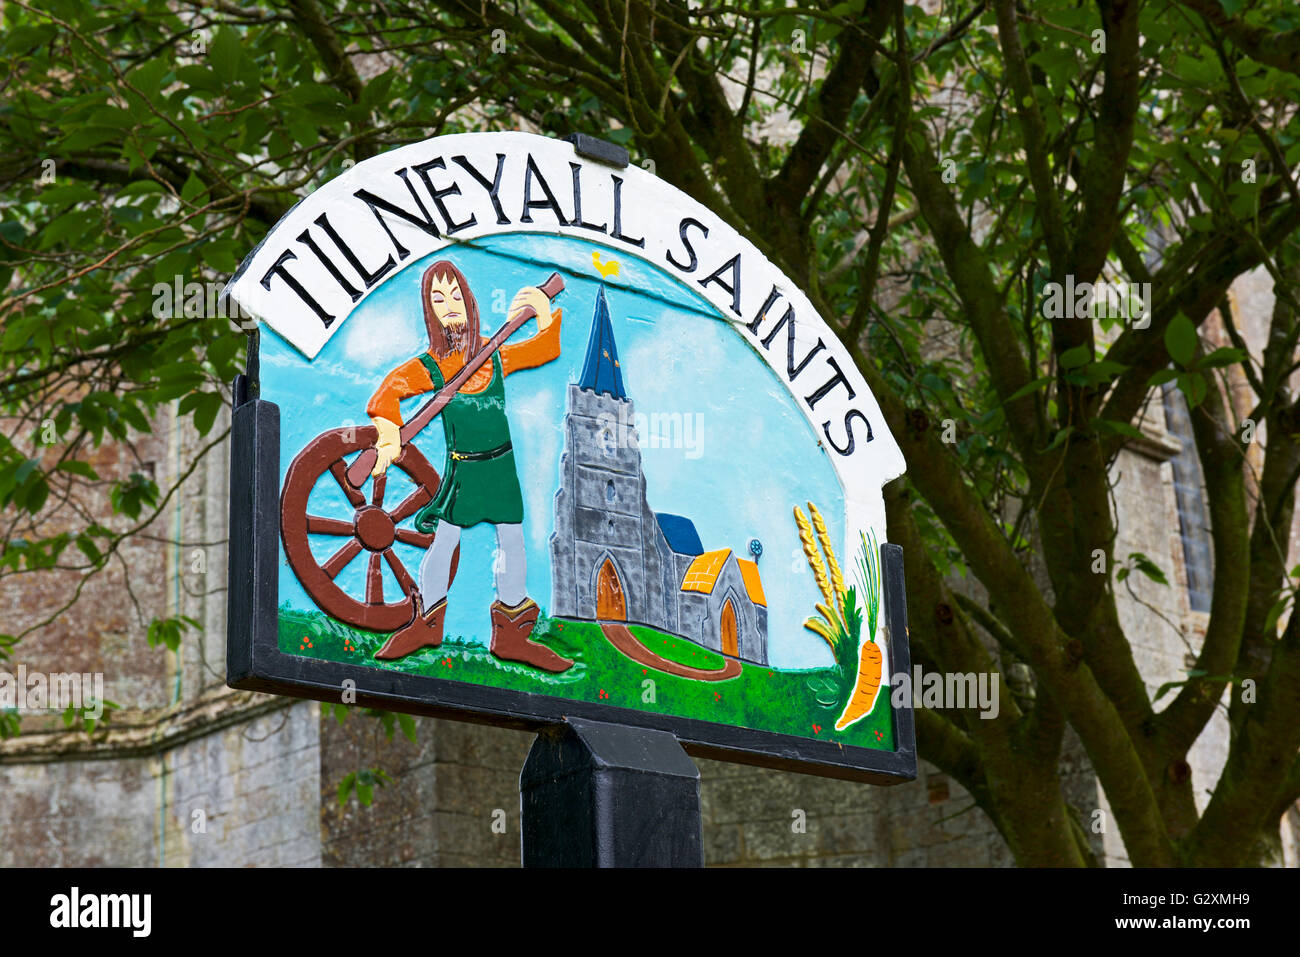 Village sign for Tilney All Saints, Norfolk, England UK Stock Photo